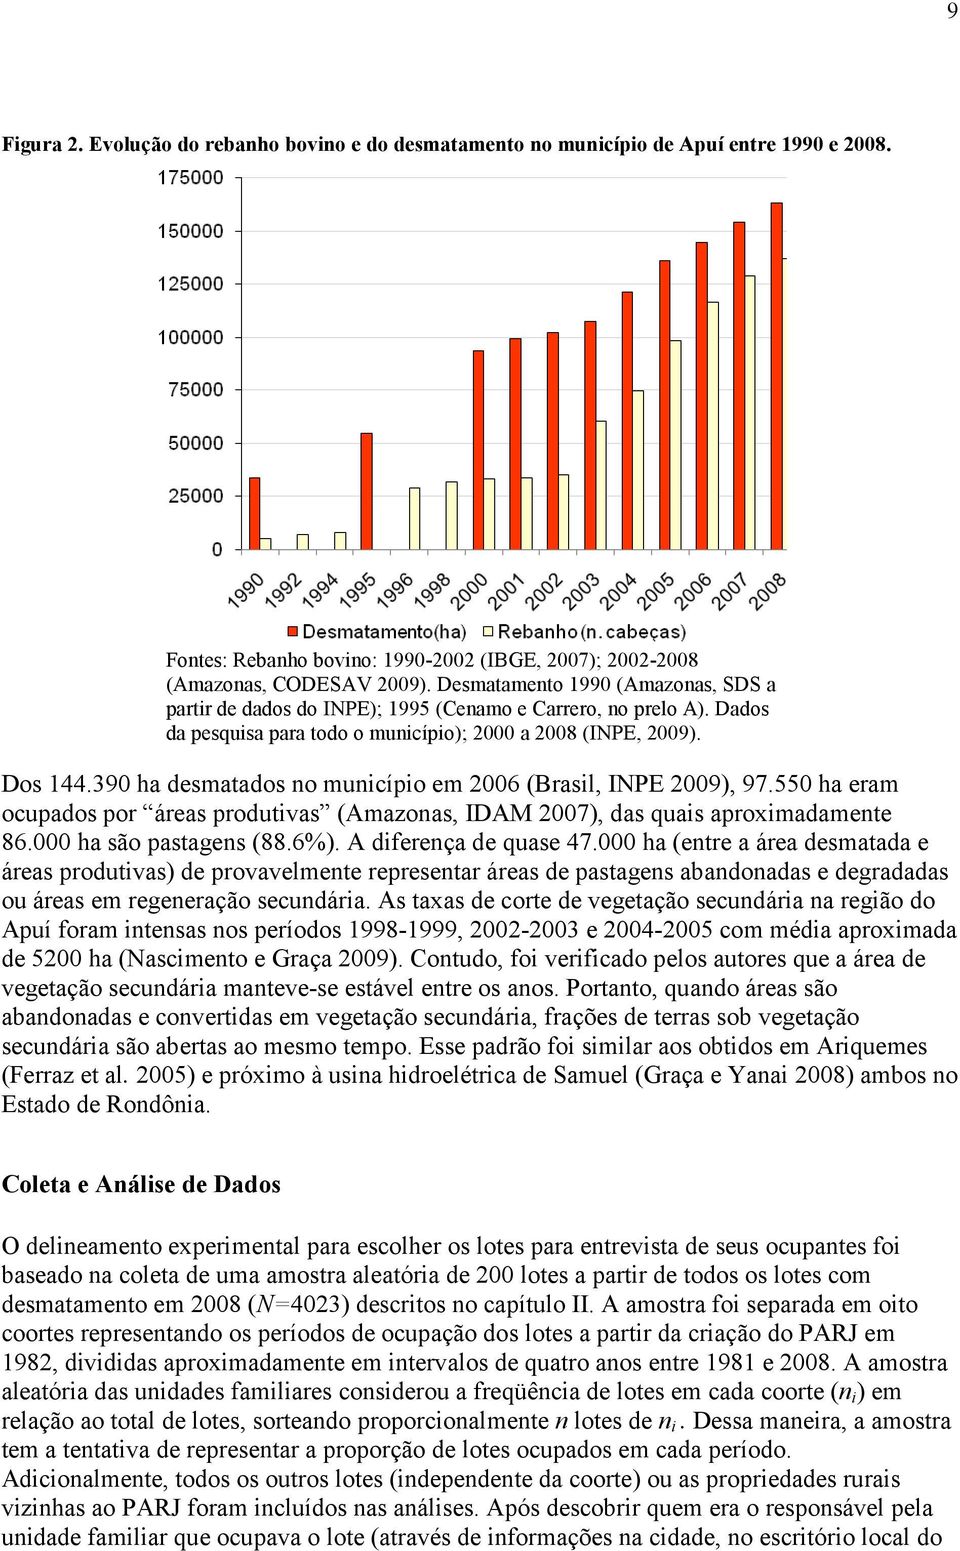 390 ha desmatados no município em 2006 (Brasil, INPE 2009), 97.550 ha eram ocupados por áreas produtivas (Amazonas, IDAM 2007), das quais aproximadamente 86.000 ha são pastagens (88.6%).